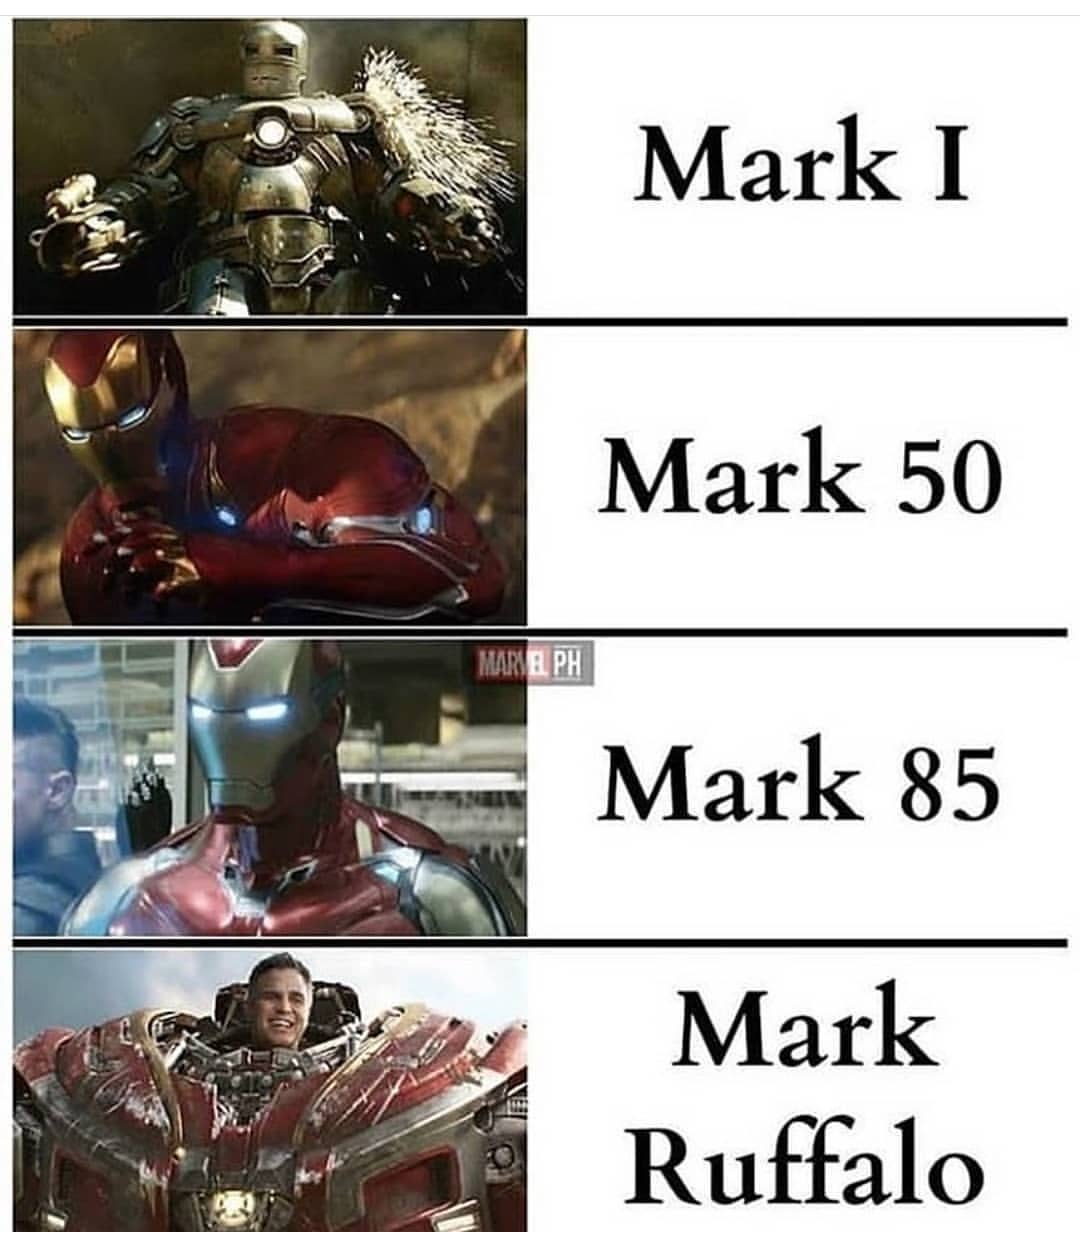 Iron Man - Mark I Mark 50 Mare.Ph Mark 85 Mark Ruffalo